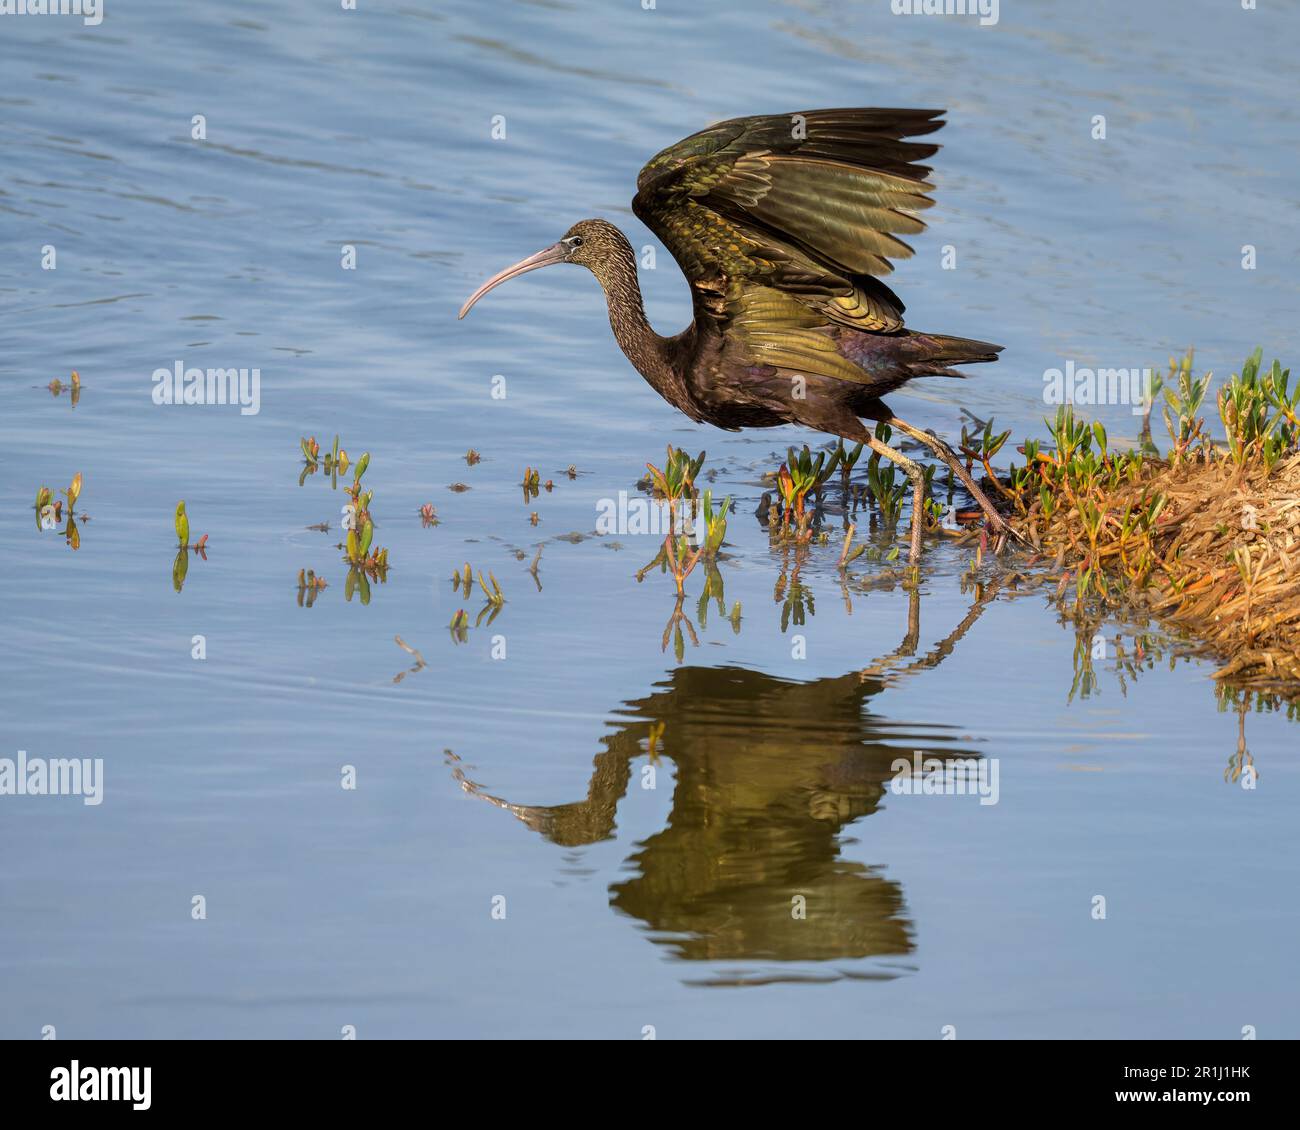 Un ibis brillante, Plegadis falcinellus, un pájaro de agua vadeando por aguas tranquilas y comienza a volar, imágenes de espejo, Gran Canaria, España Foto de stock